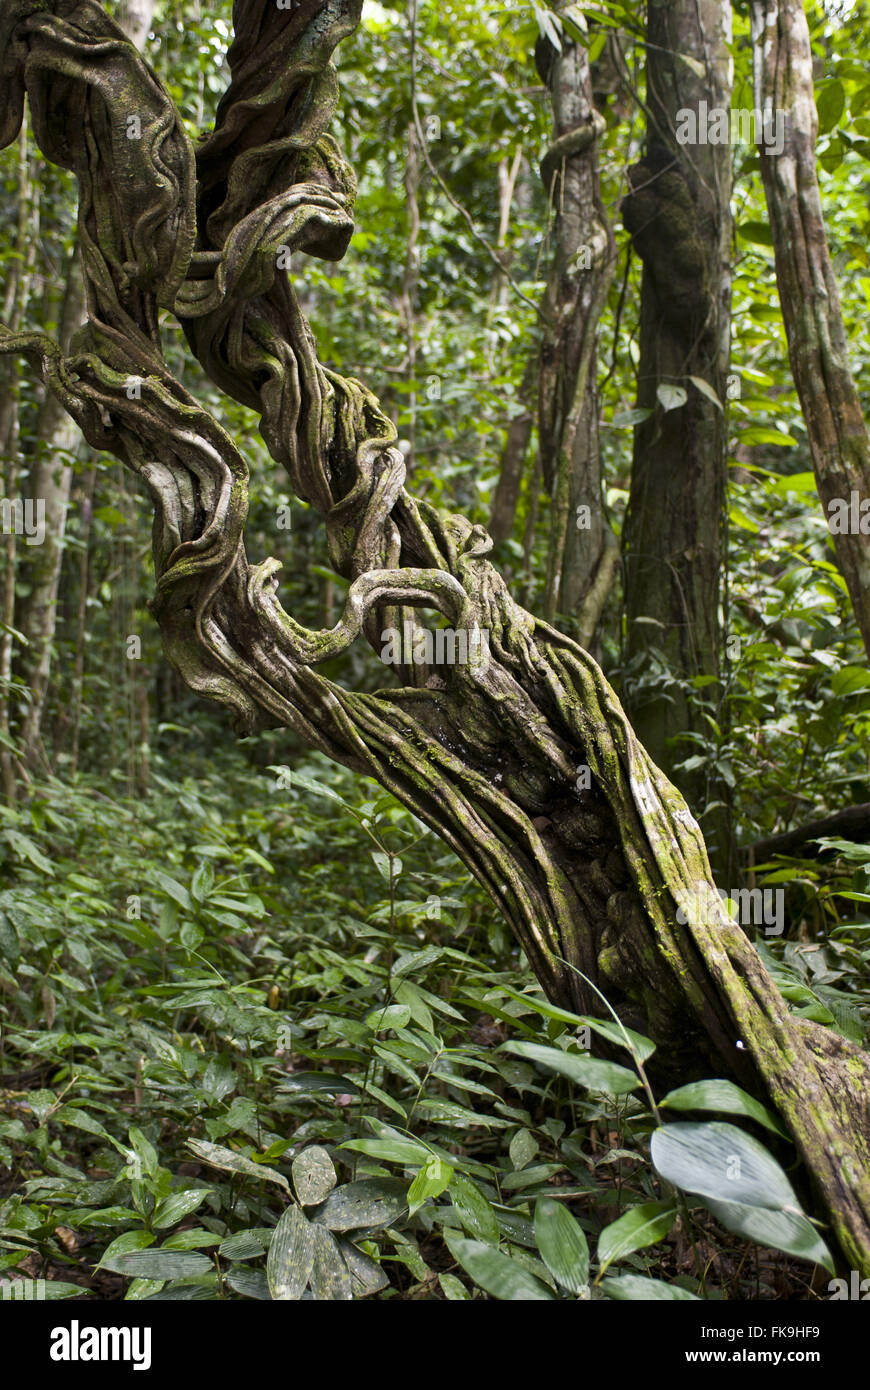 von beliebten Artikeln bis hin zu neuen Artikeln! Detail of the region Alto Amazon Solimoes in Alamy the - forest Photo - cipo Stock